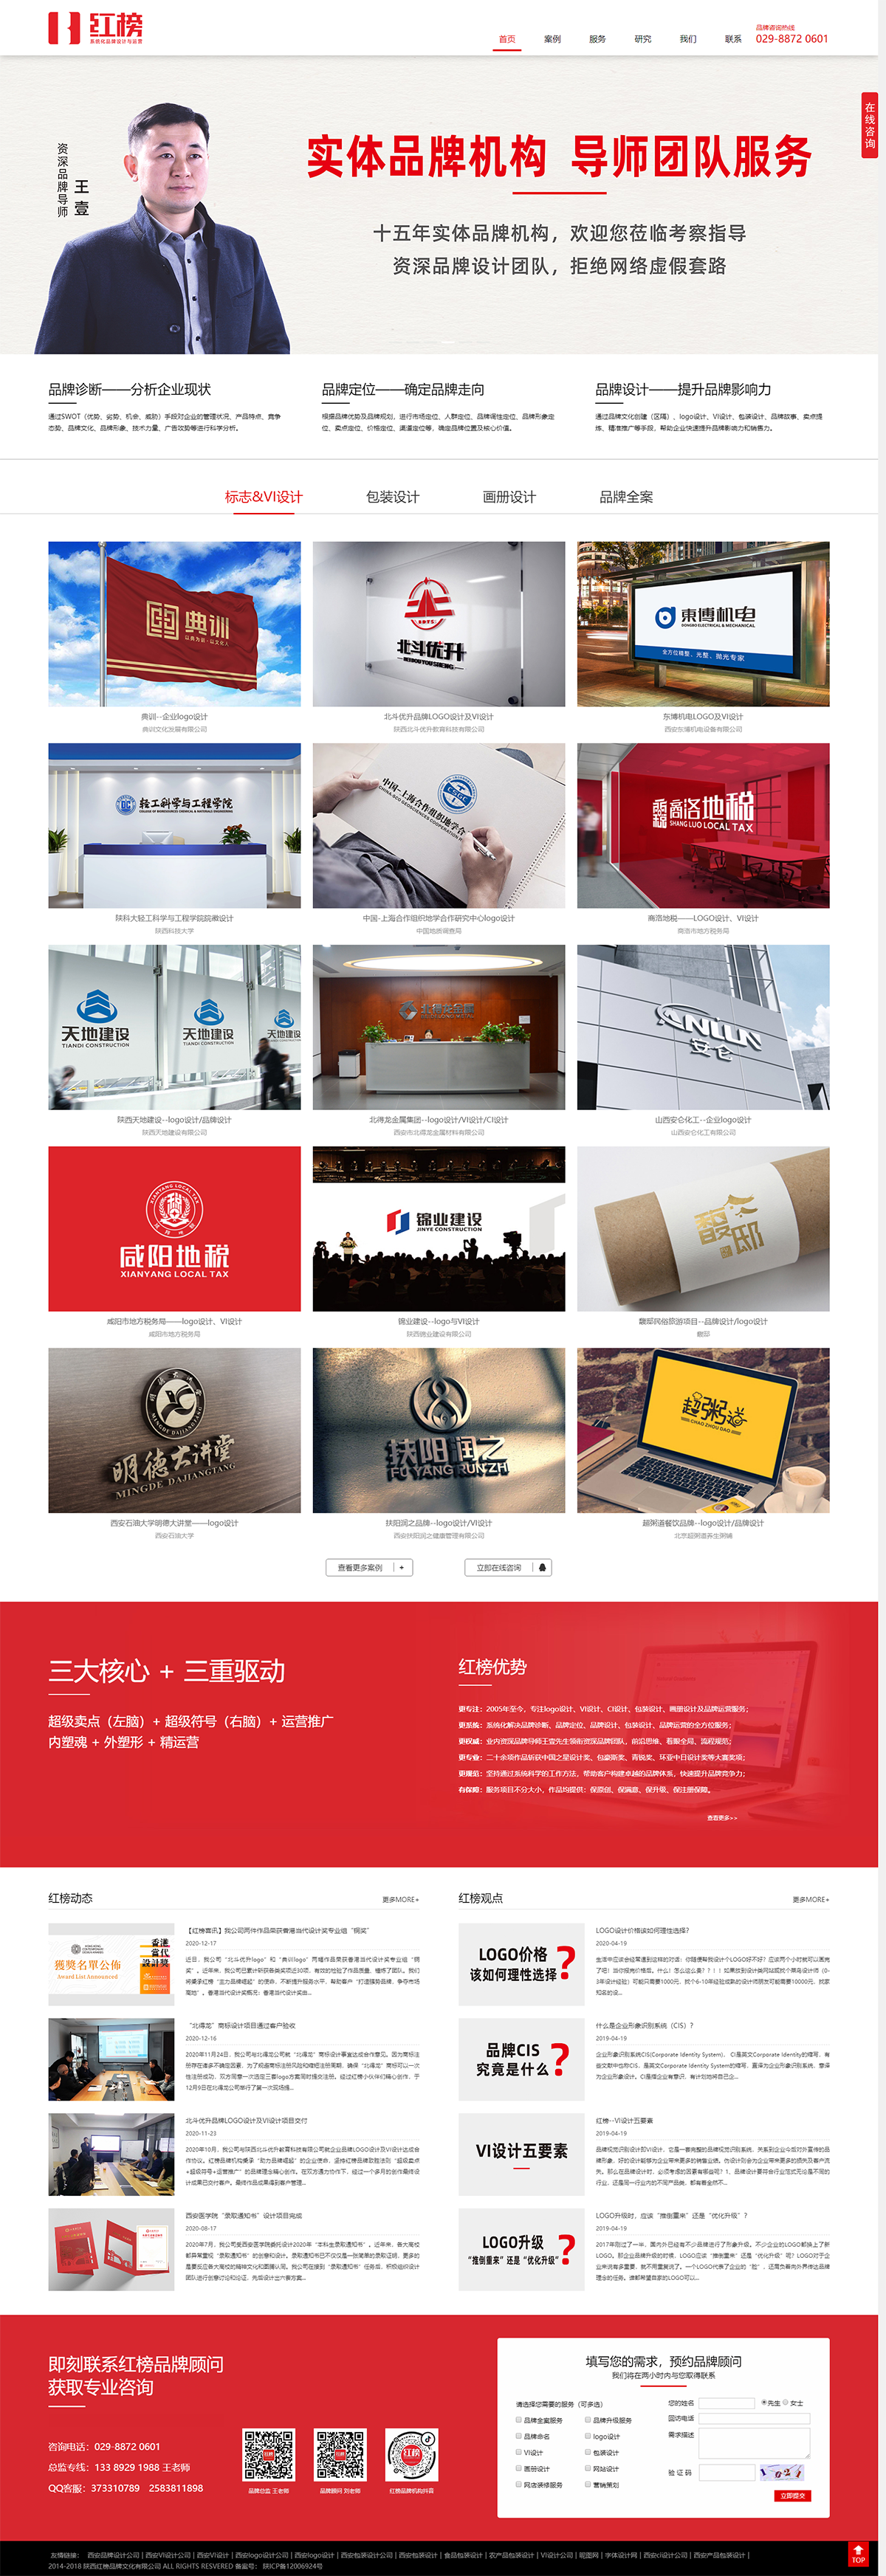 红榜品牌设计-西安logo设计公司,西安标志设计,西安VI设计公司,西安画册设计公司,西安包装设计公.png